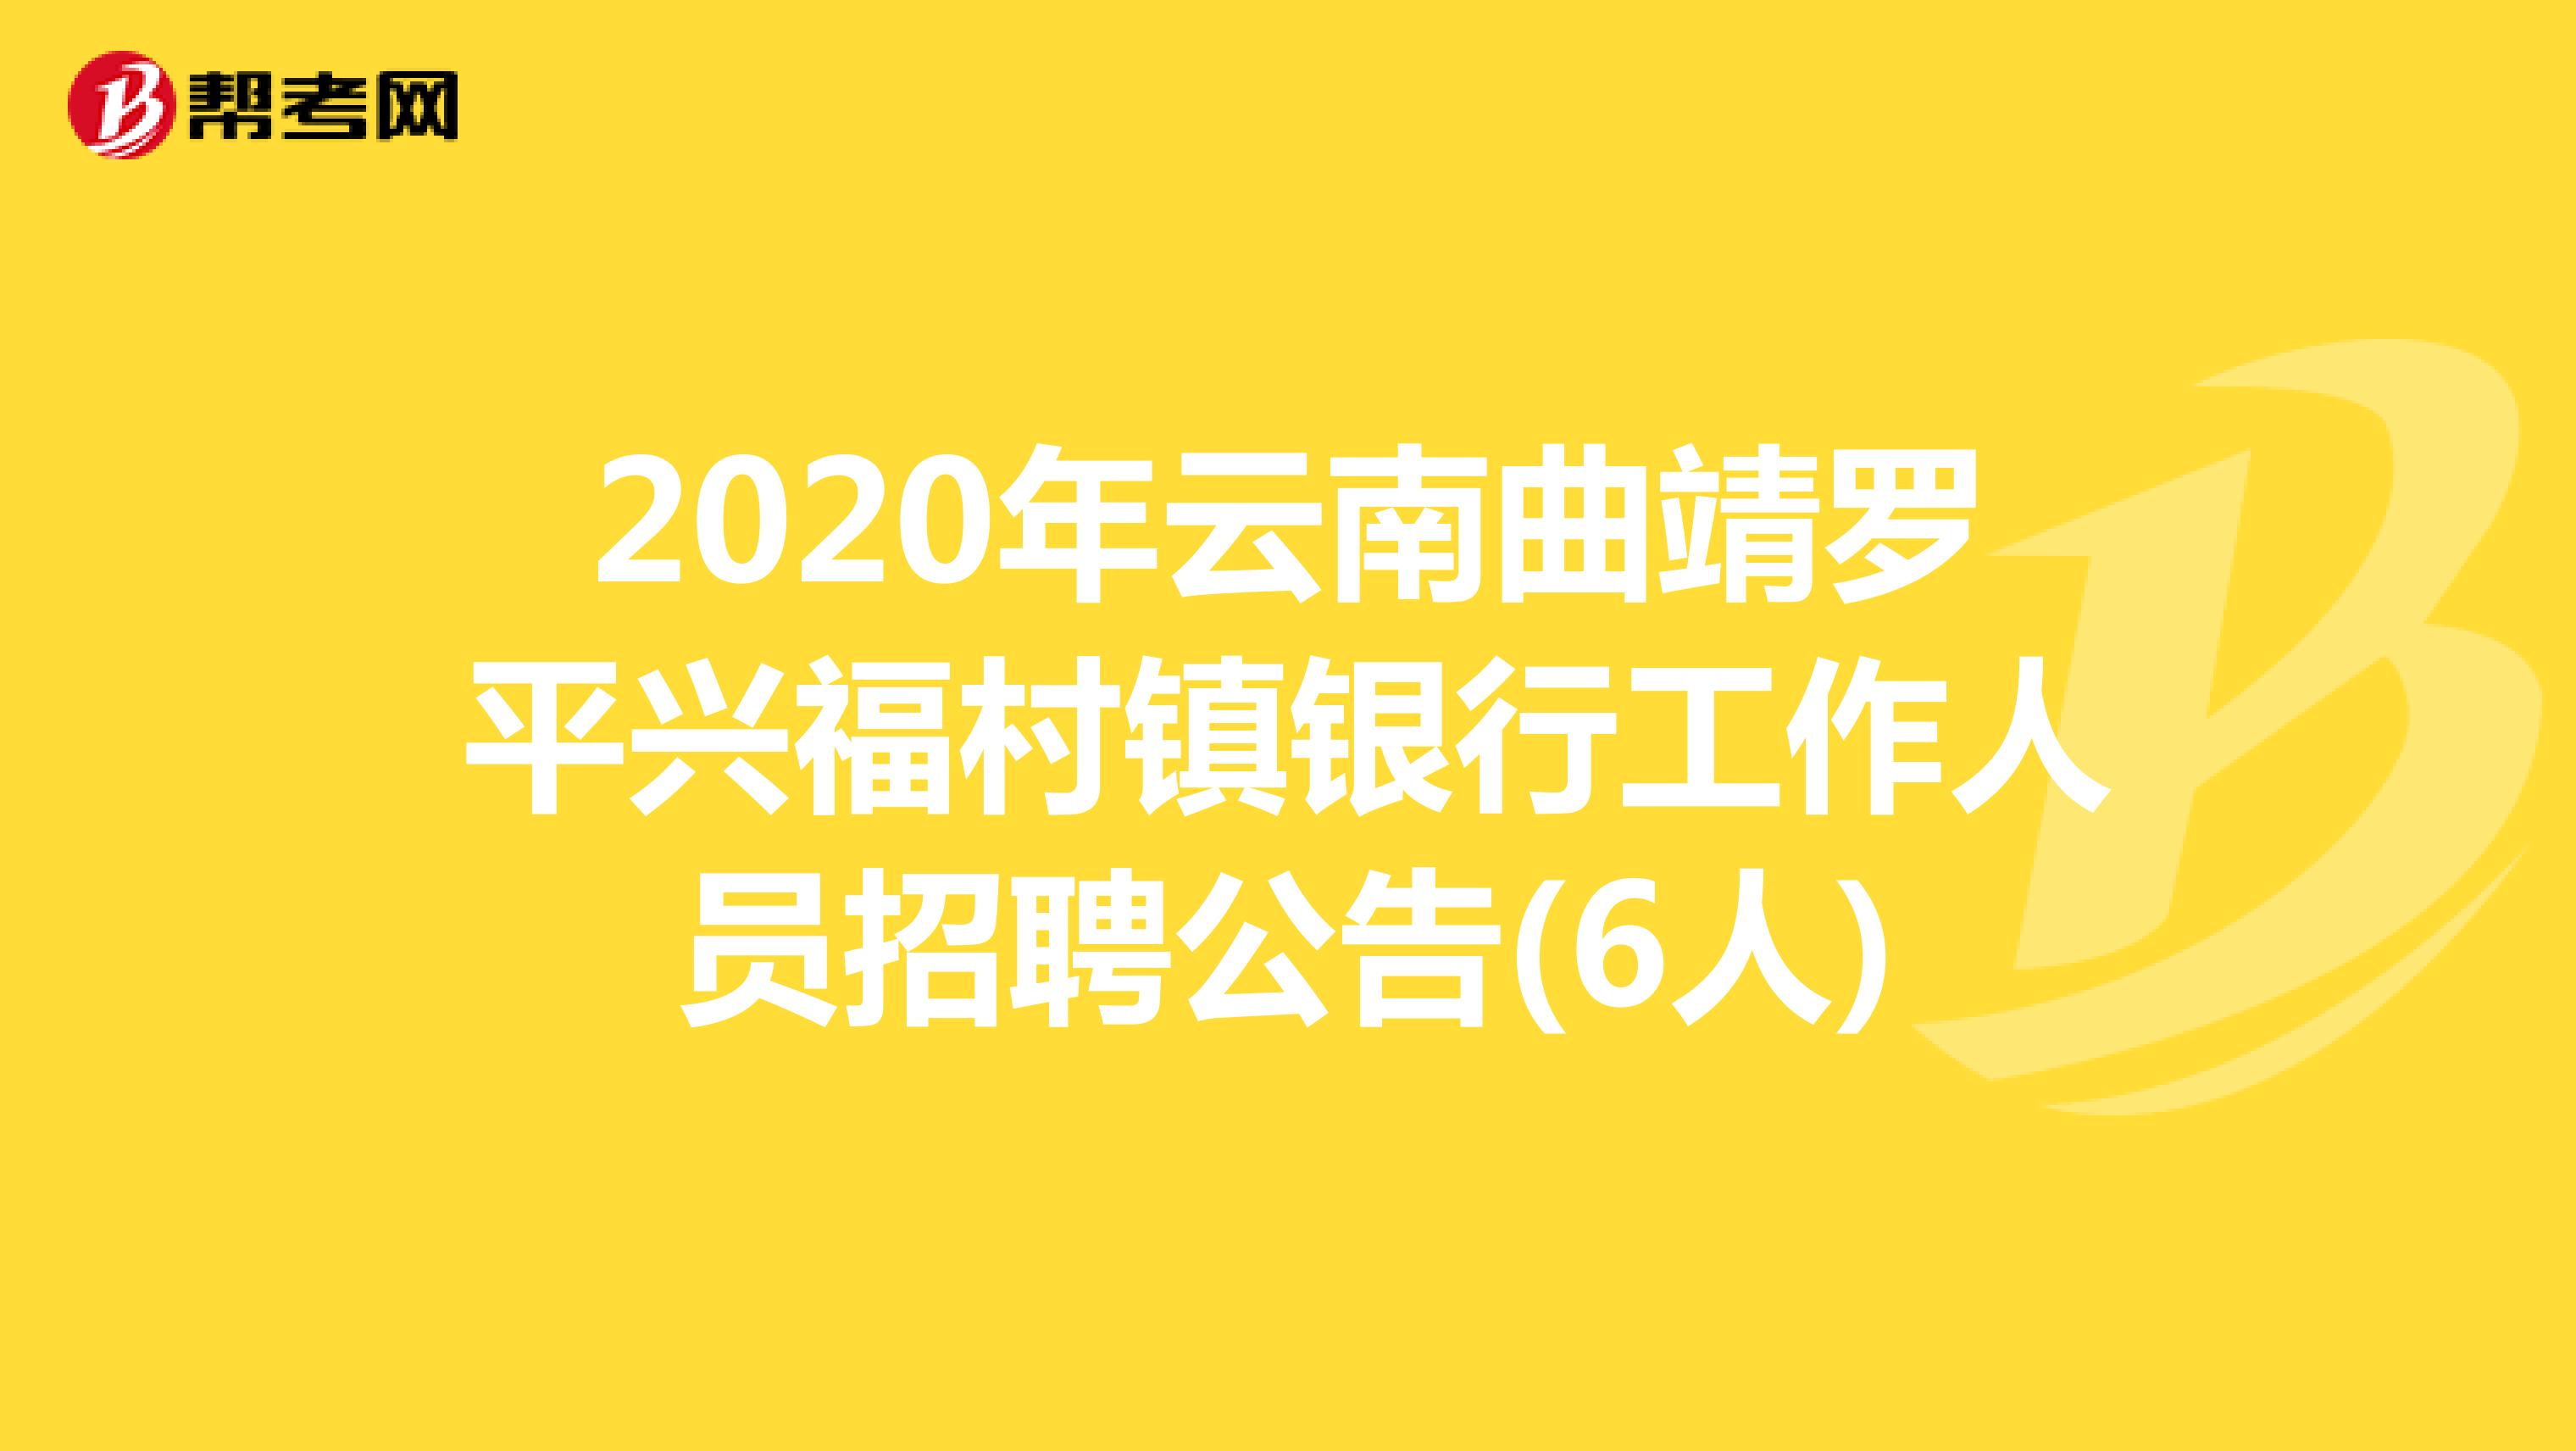 2020年云南曲靖罗平兴福村镇银行工作人员招聘公告(6人)